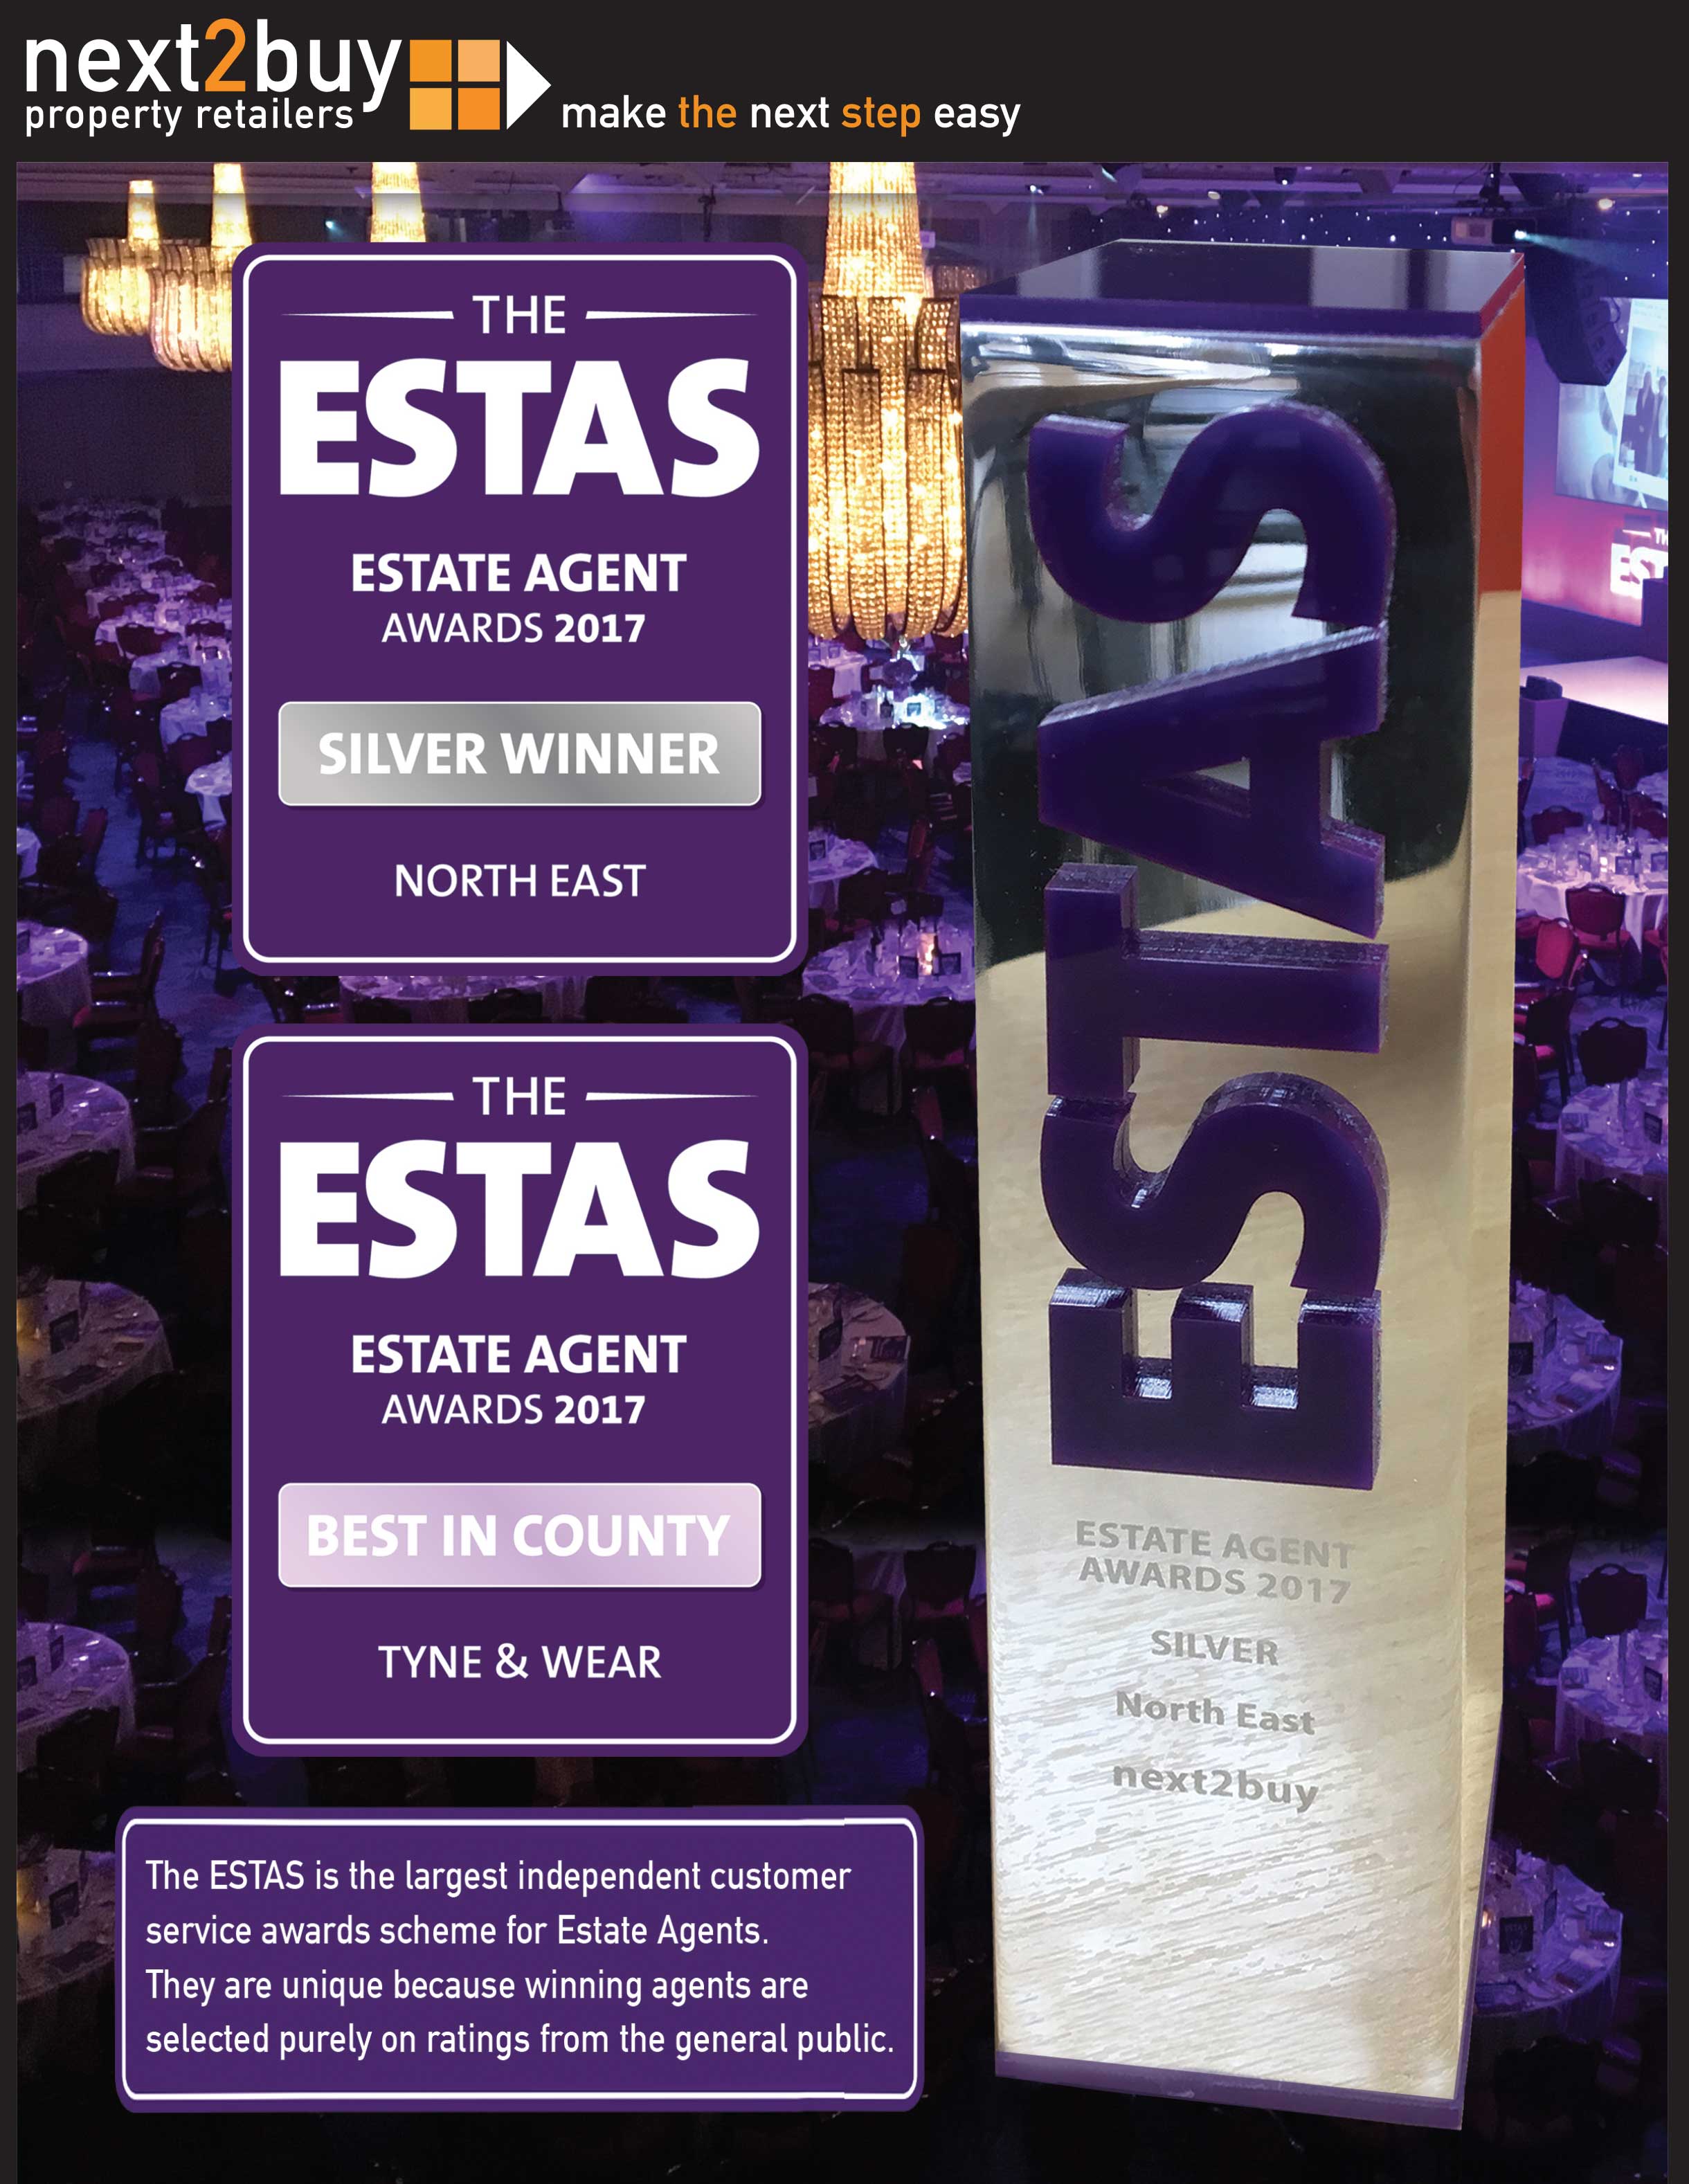 ESTAS Awards 2017